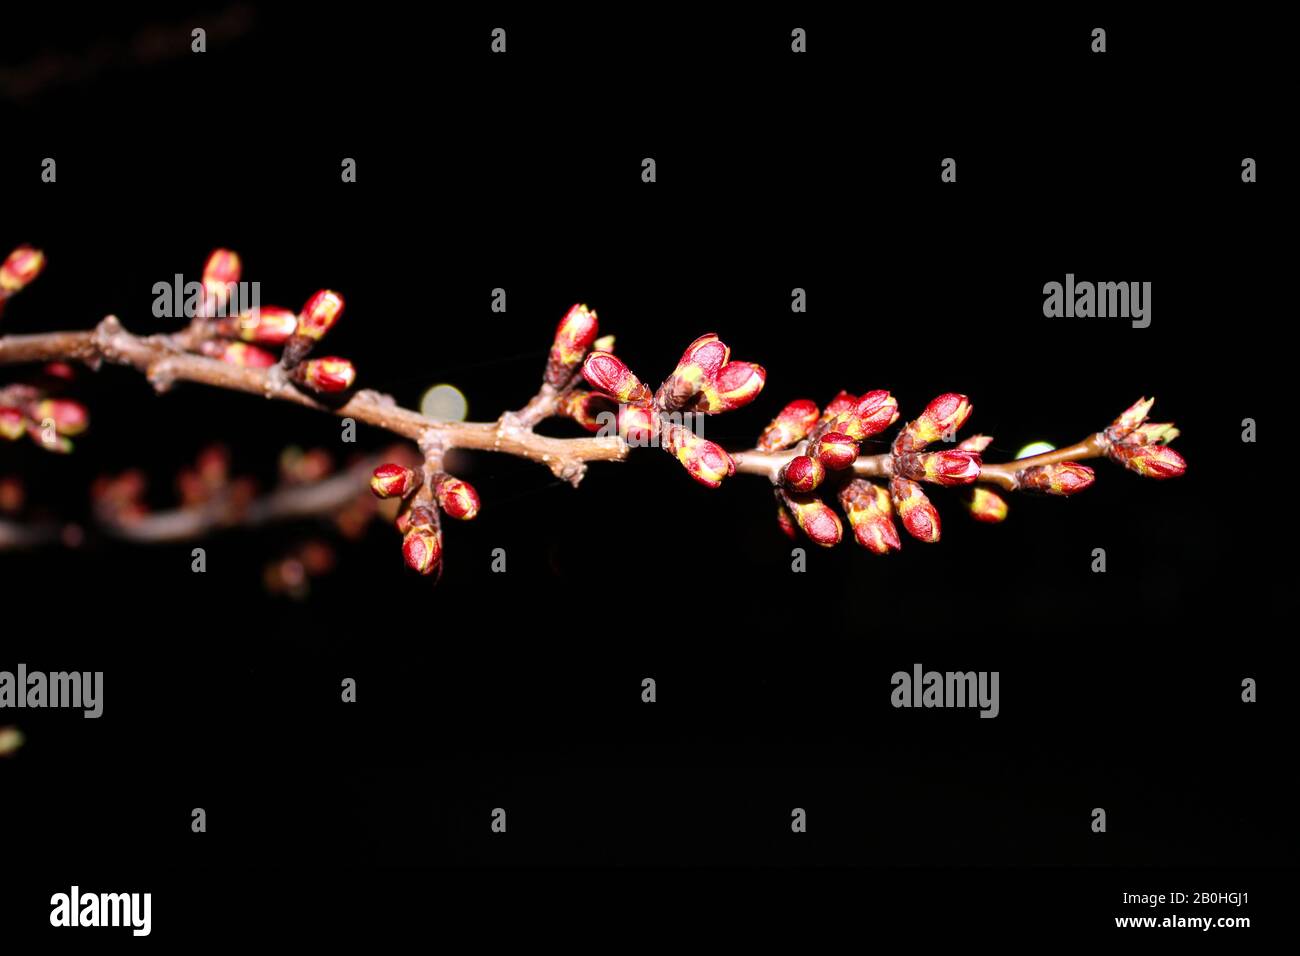 Gros plan sur fond noir - image stock. Bourgeons et fleurs de sakura japonais fleuris sur le ciel sombre avec espace de copie. Banque D'Images